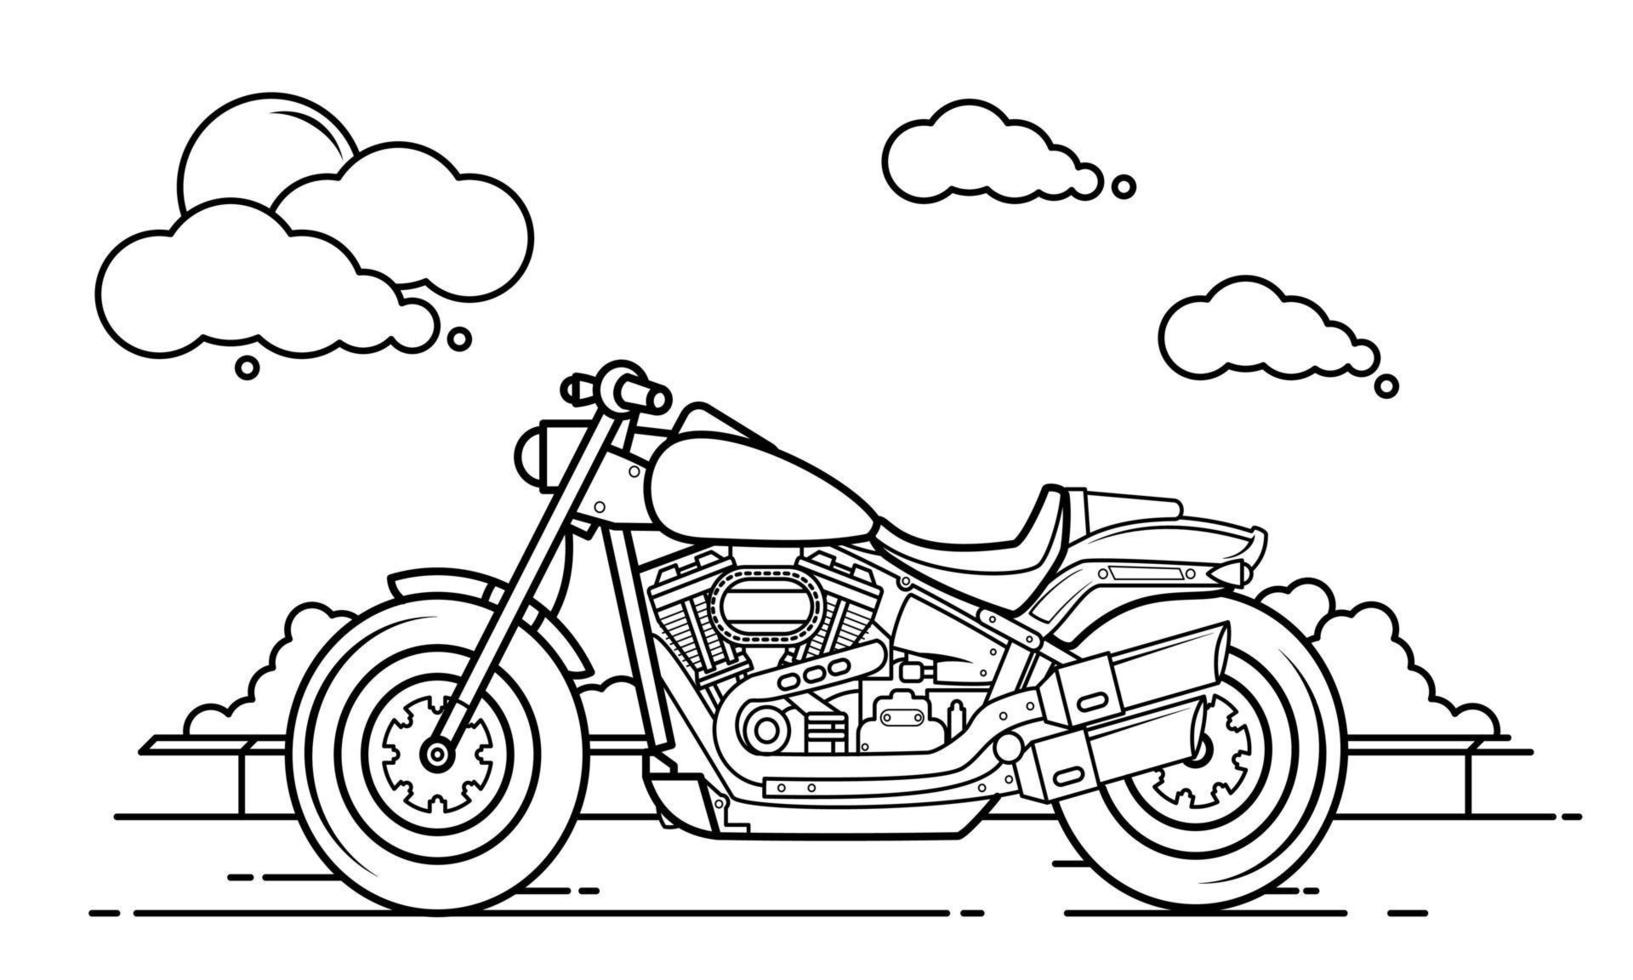 diseño de esquema de motocicleta para el estilo de libro de dibujo dos vector